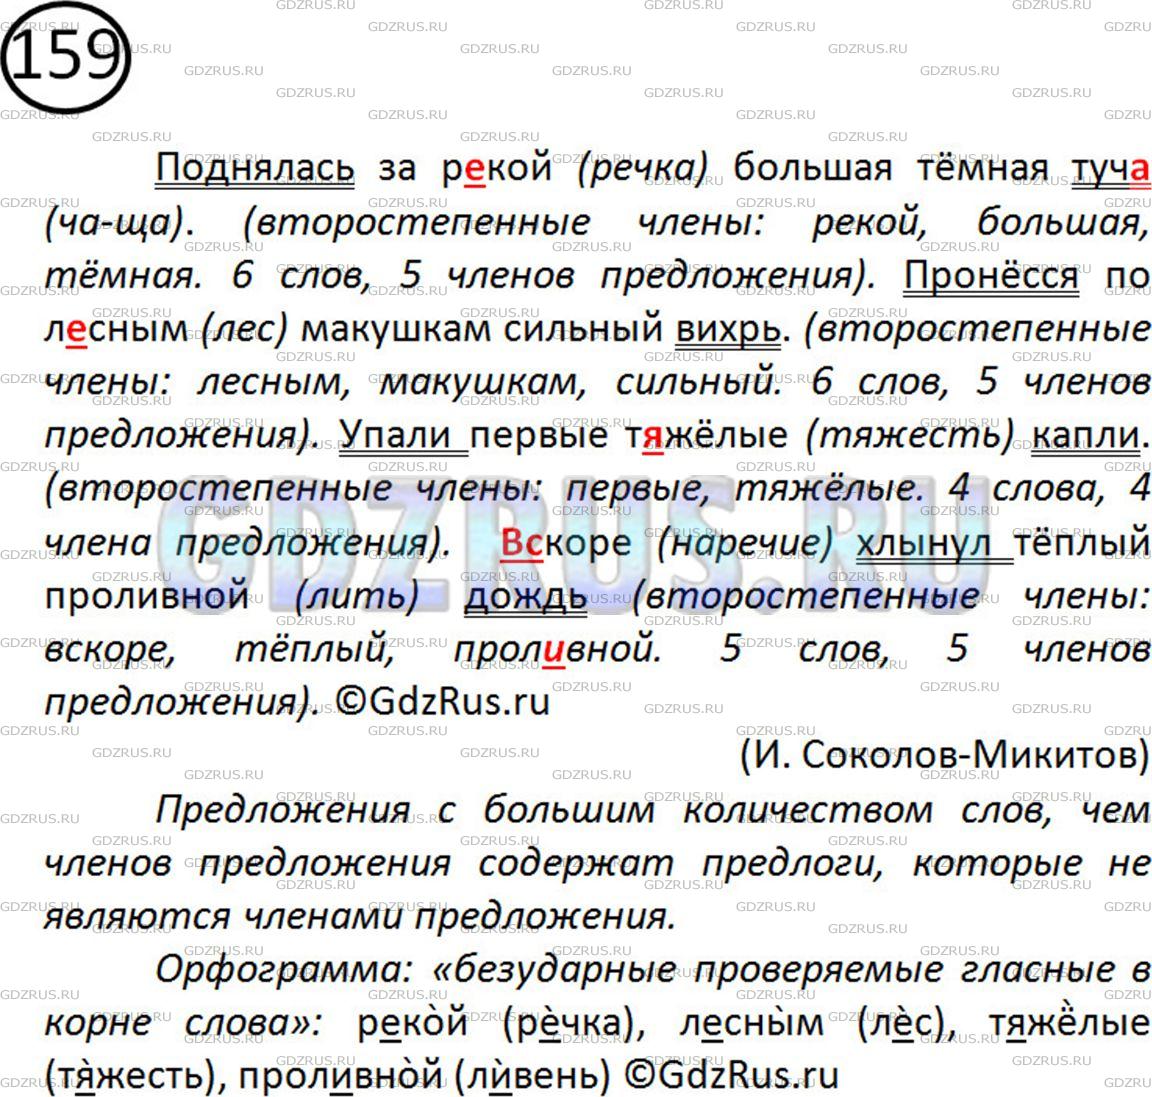 Фото картинка ответа 2: Упражнение № 159 из ГДЗ по Русскому языку 5 класс: Ладыженская